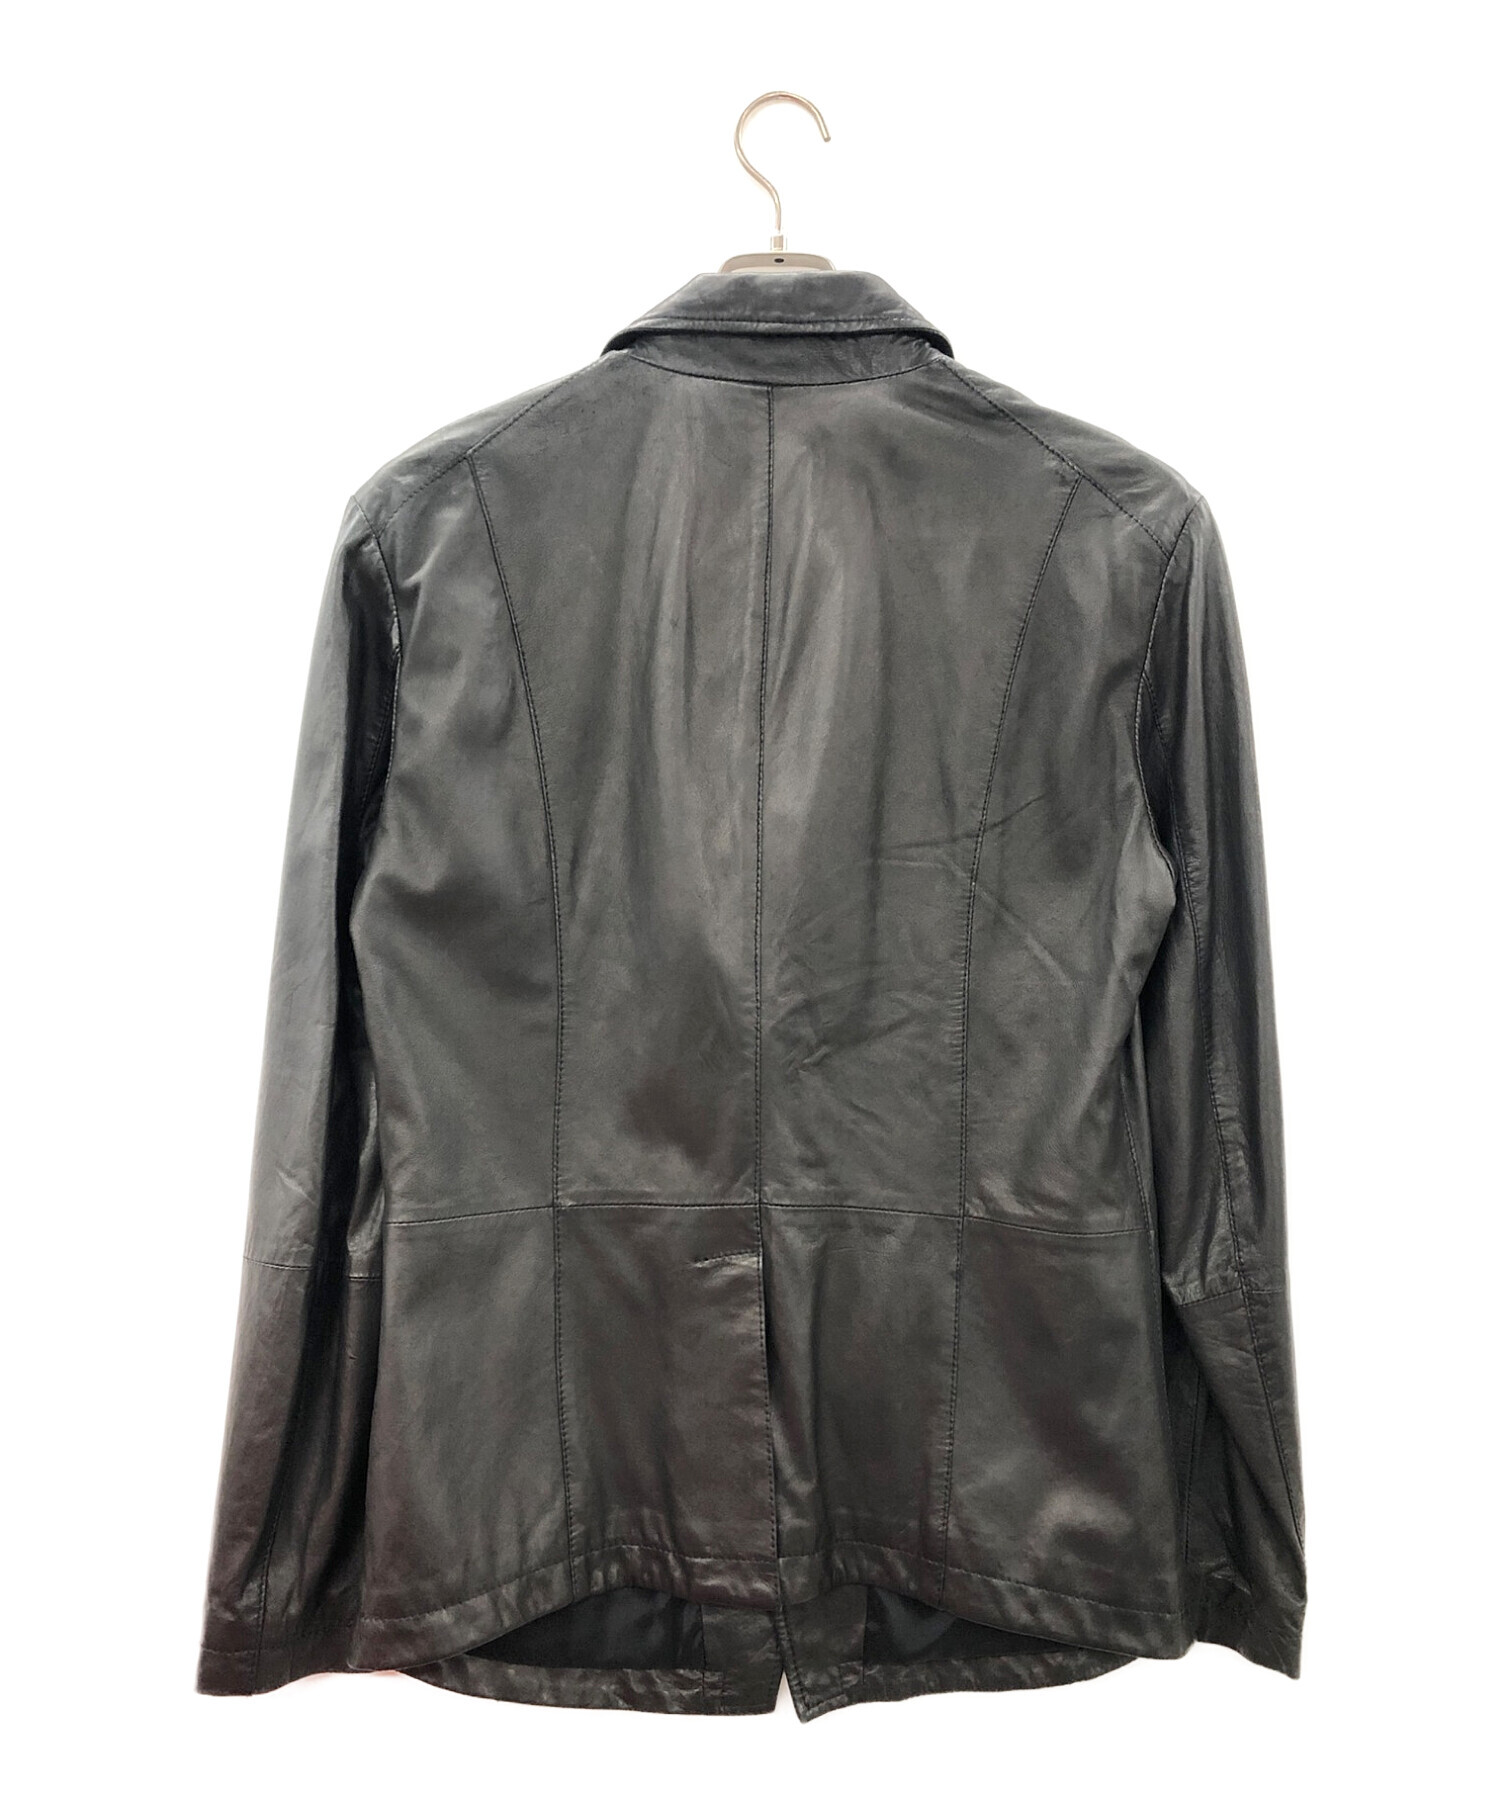 EMPORIO ARMANI (エンポリオアルマーニ) ダブルジップアップレザージャケット ブラック サイズ:48